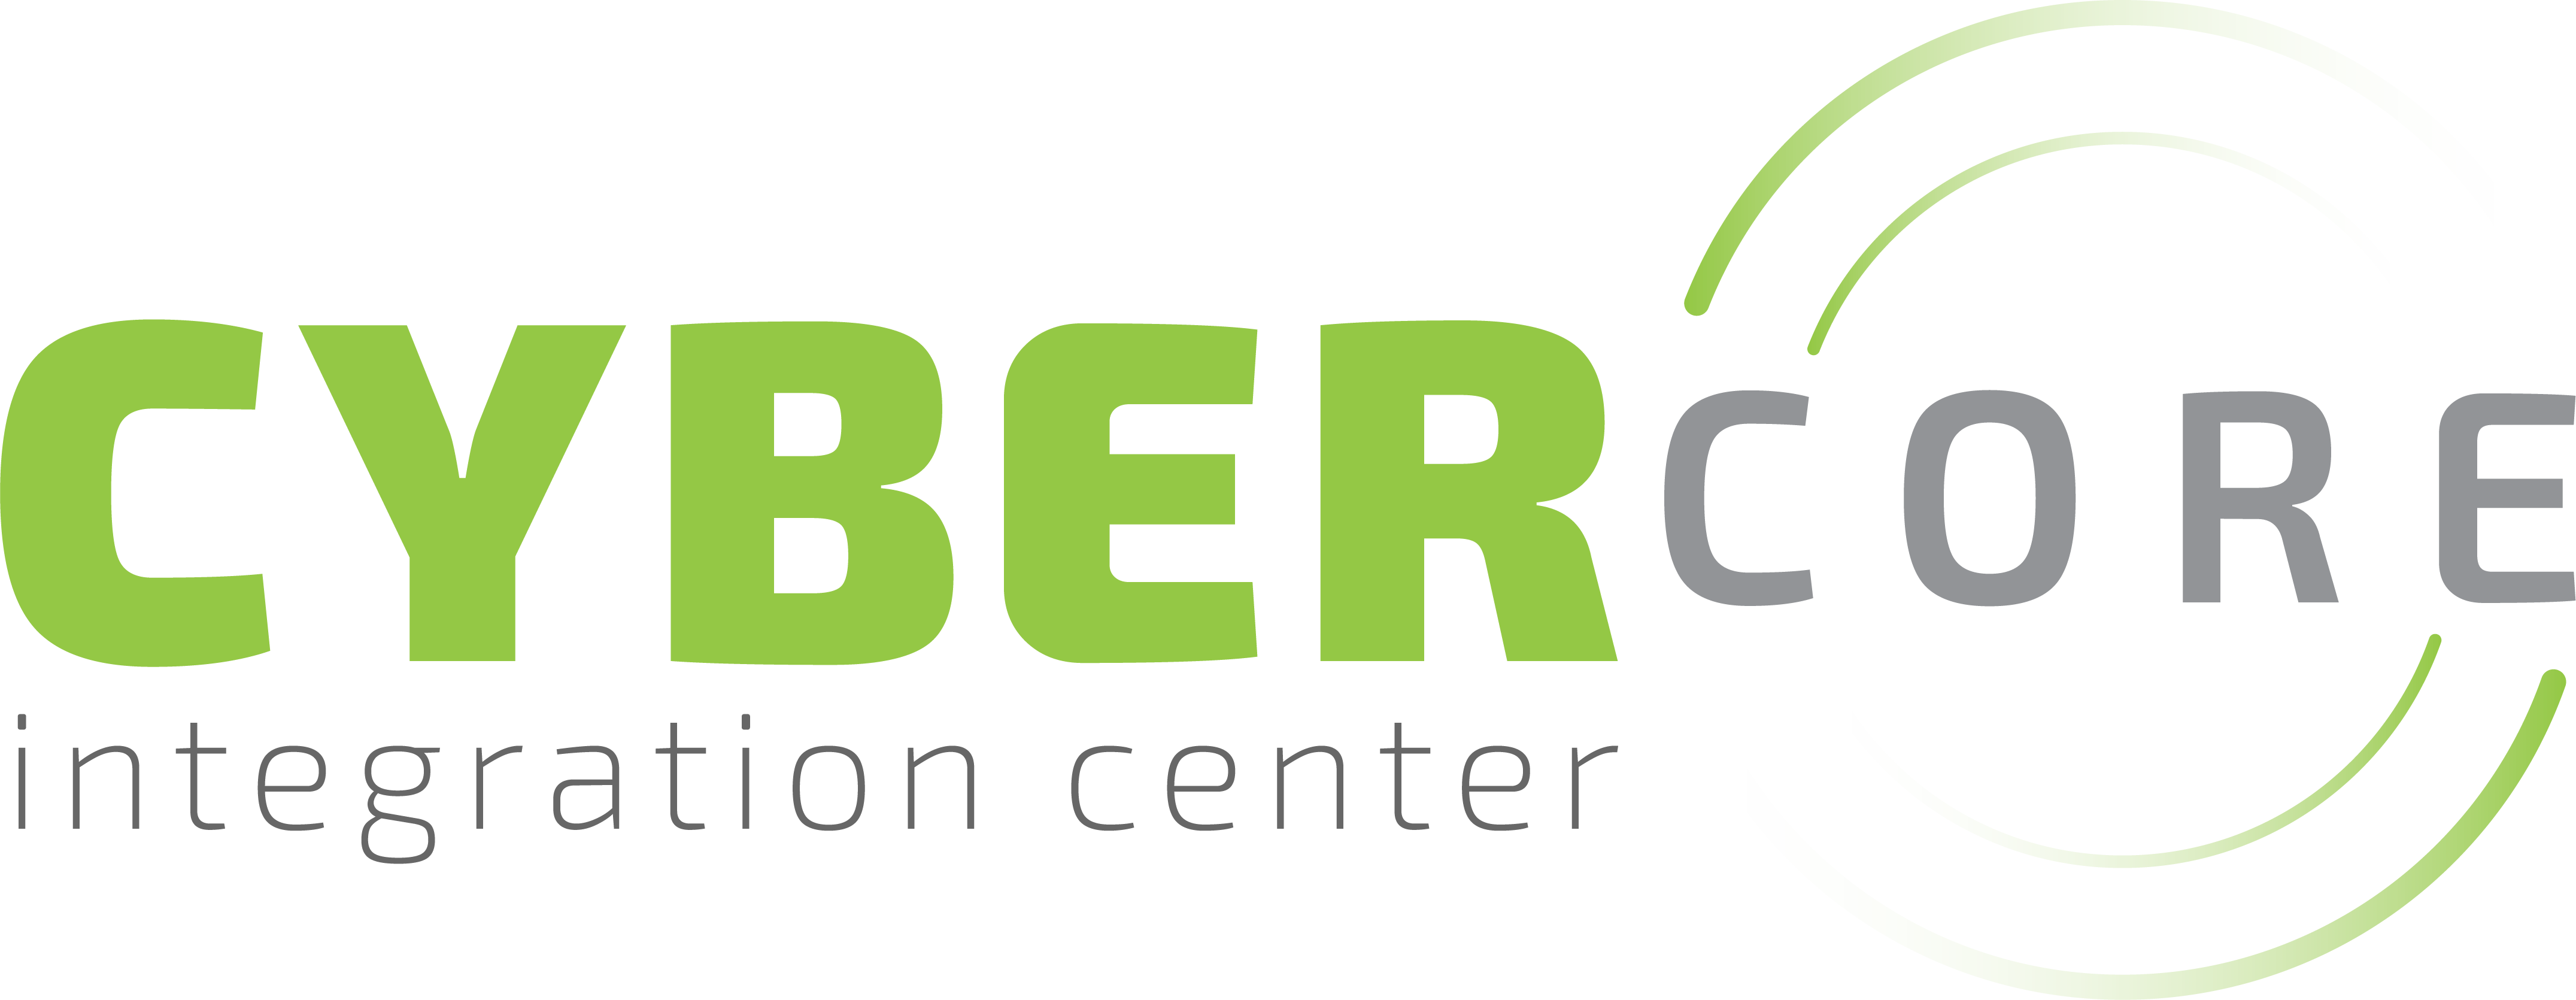 Cybercore Integration Center